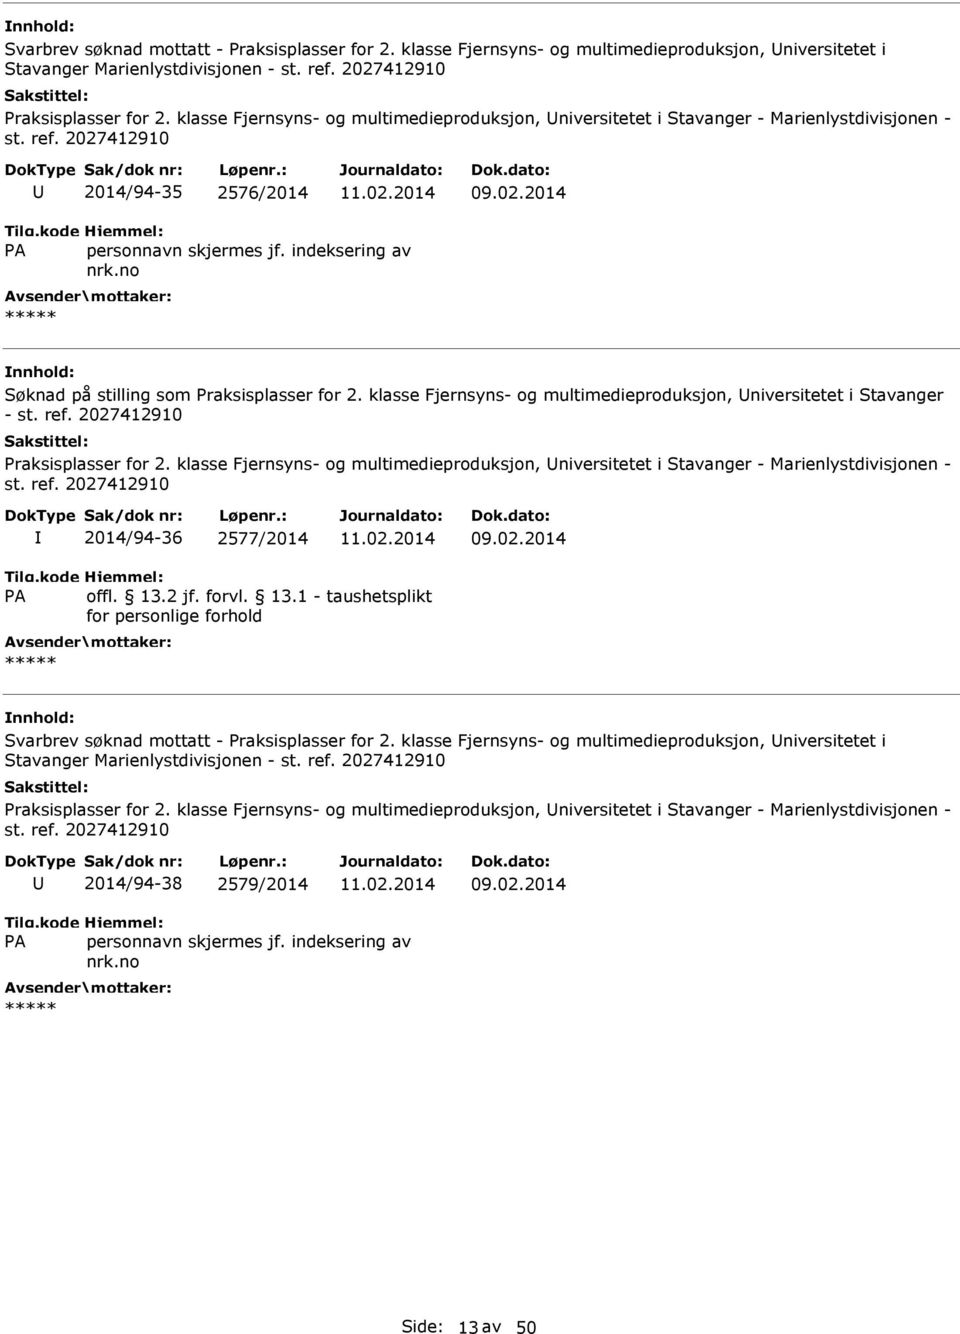 klasse Fjernsyns- og multimedieproduksjon, niversitetet i Stavanger - st. ref. 2027412910 Praksisplasser for 2.